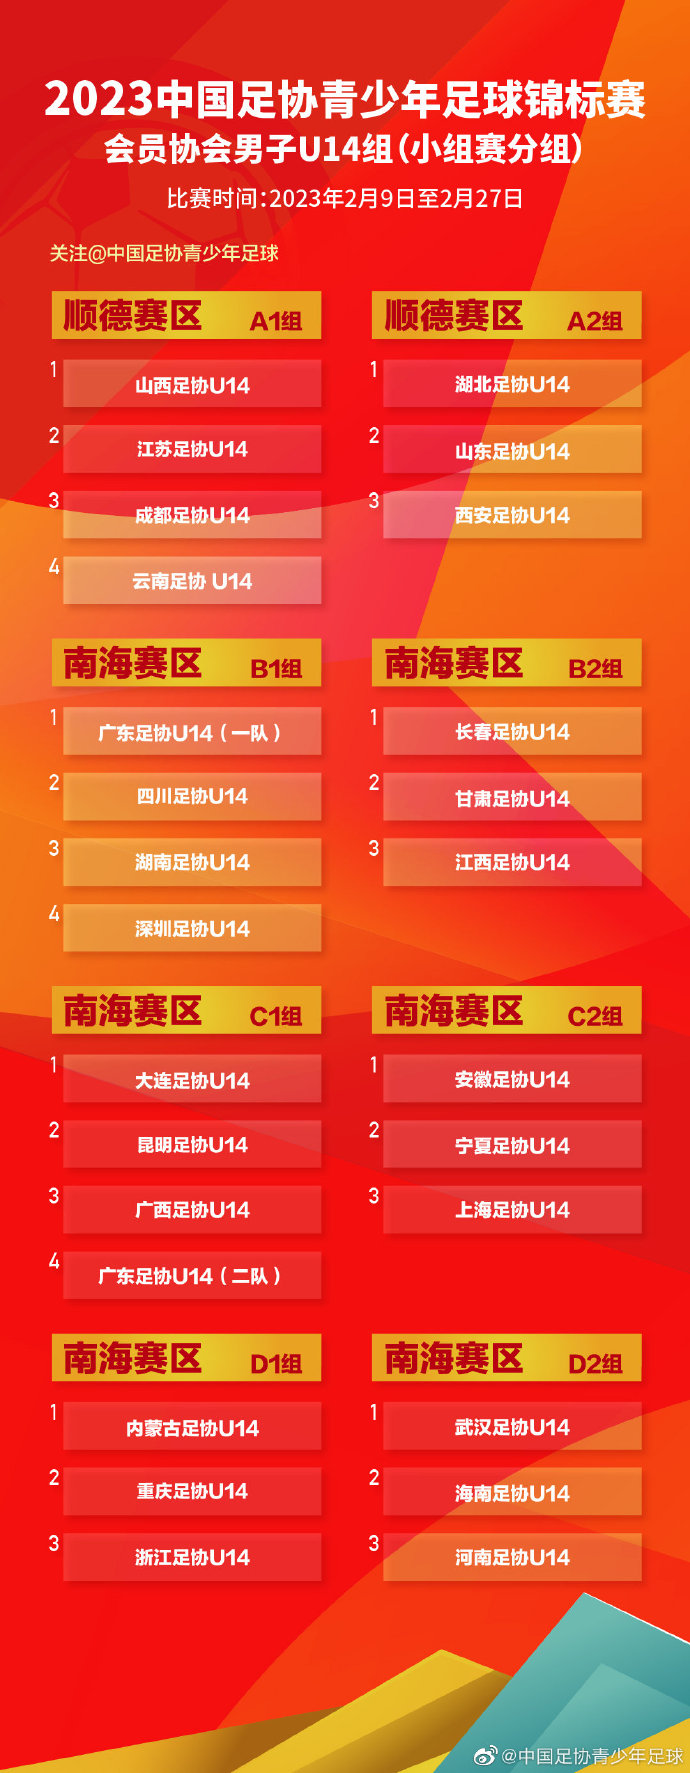 2023年中国足协青少年足球锦标赛(会员协会男子U14/U16/U18)分组